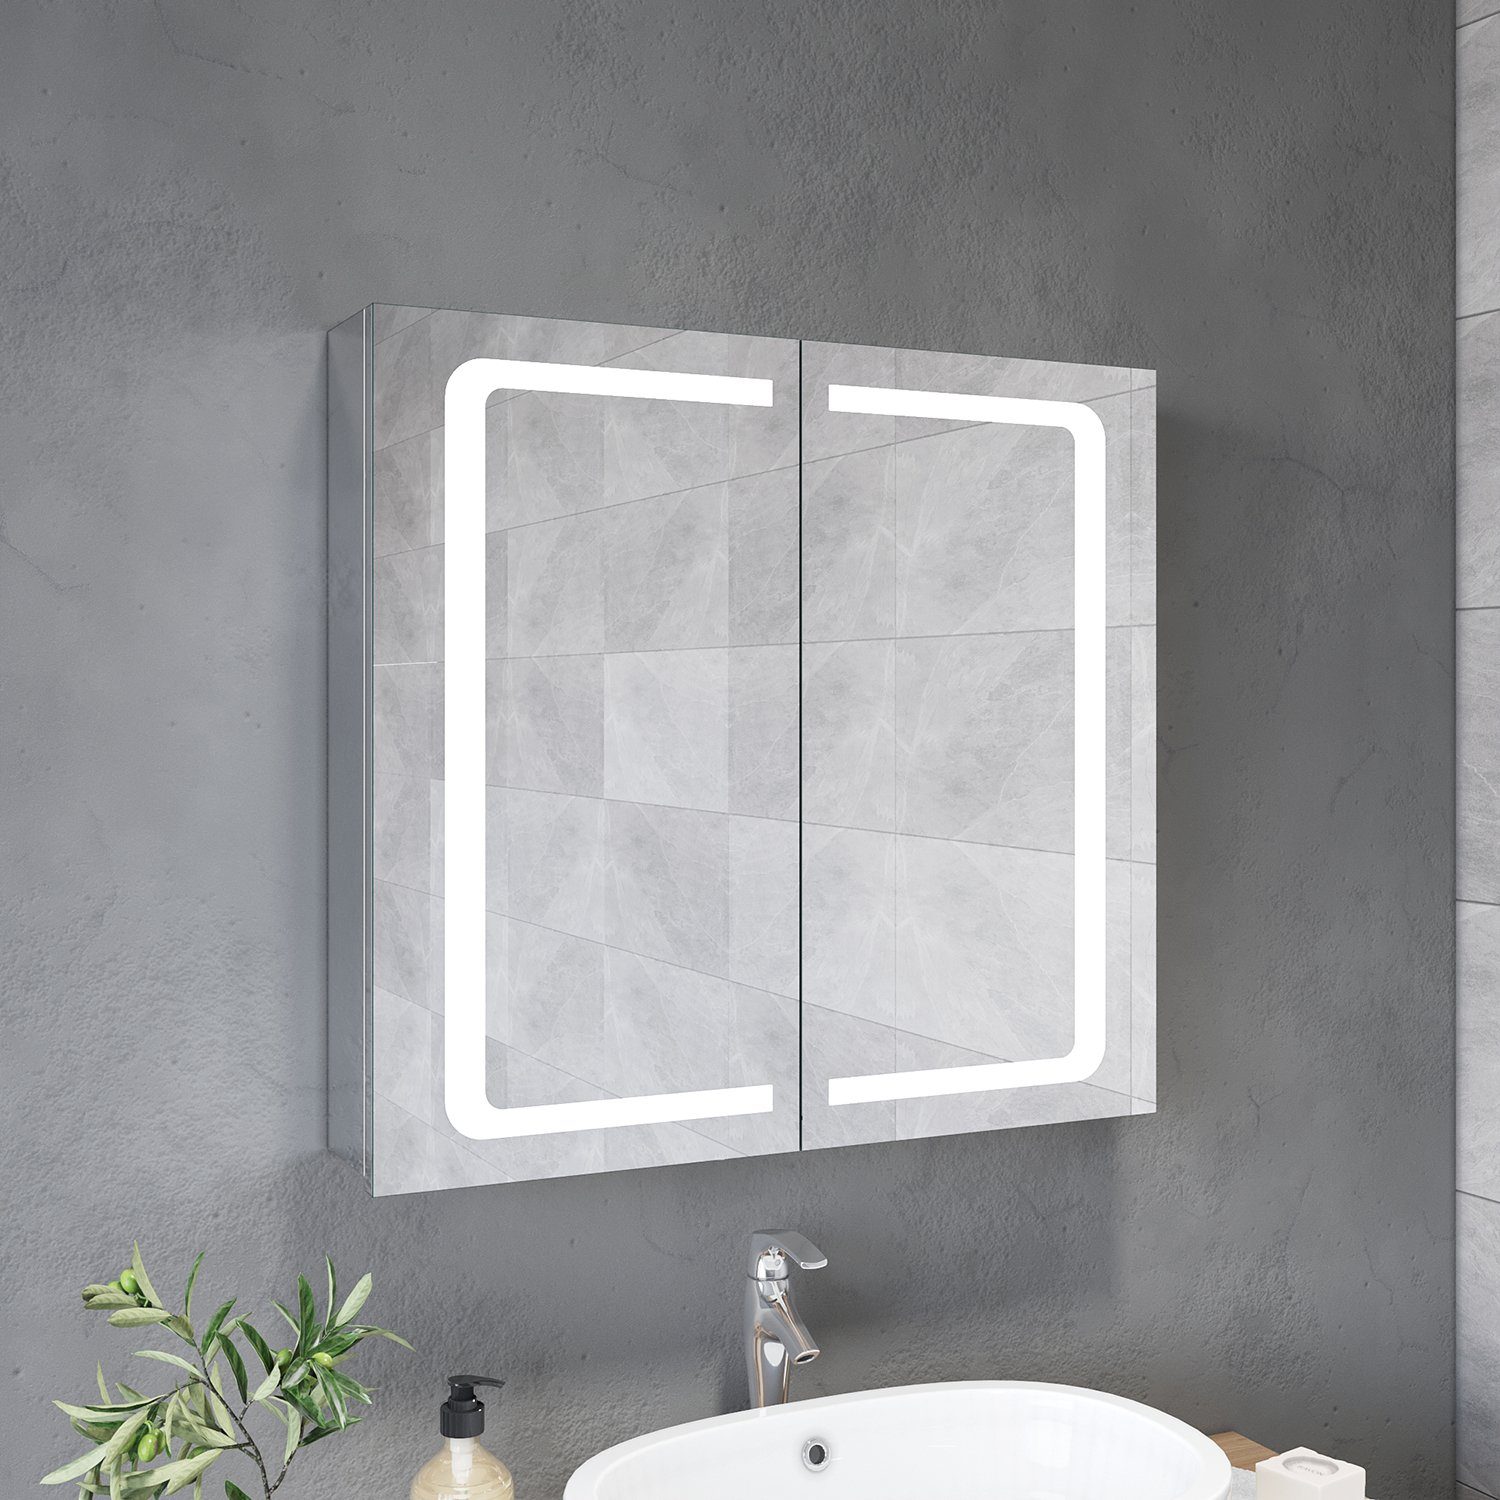 SONNI Badezimmerspiegelschrank Spiegelschrank 70cm Breite Badschrank, Steckdose, Badspiegel LED Beleuchtung Bad Badezimmerspiegelschrank 2-türig